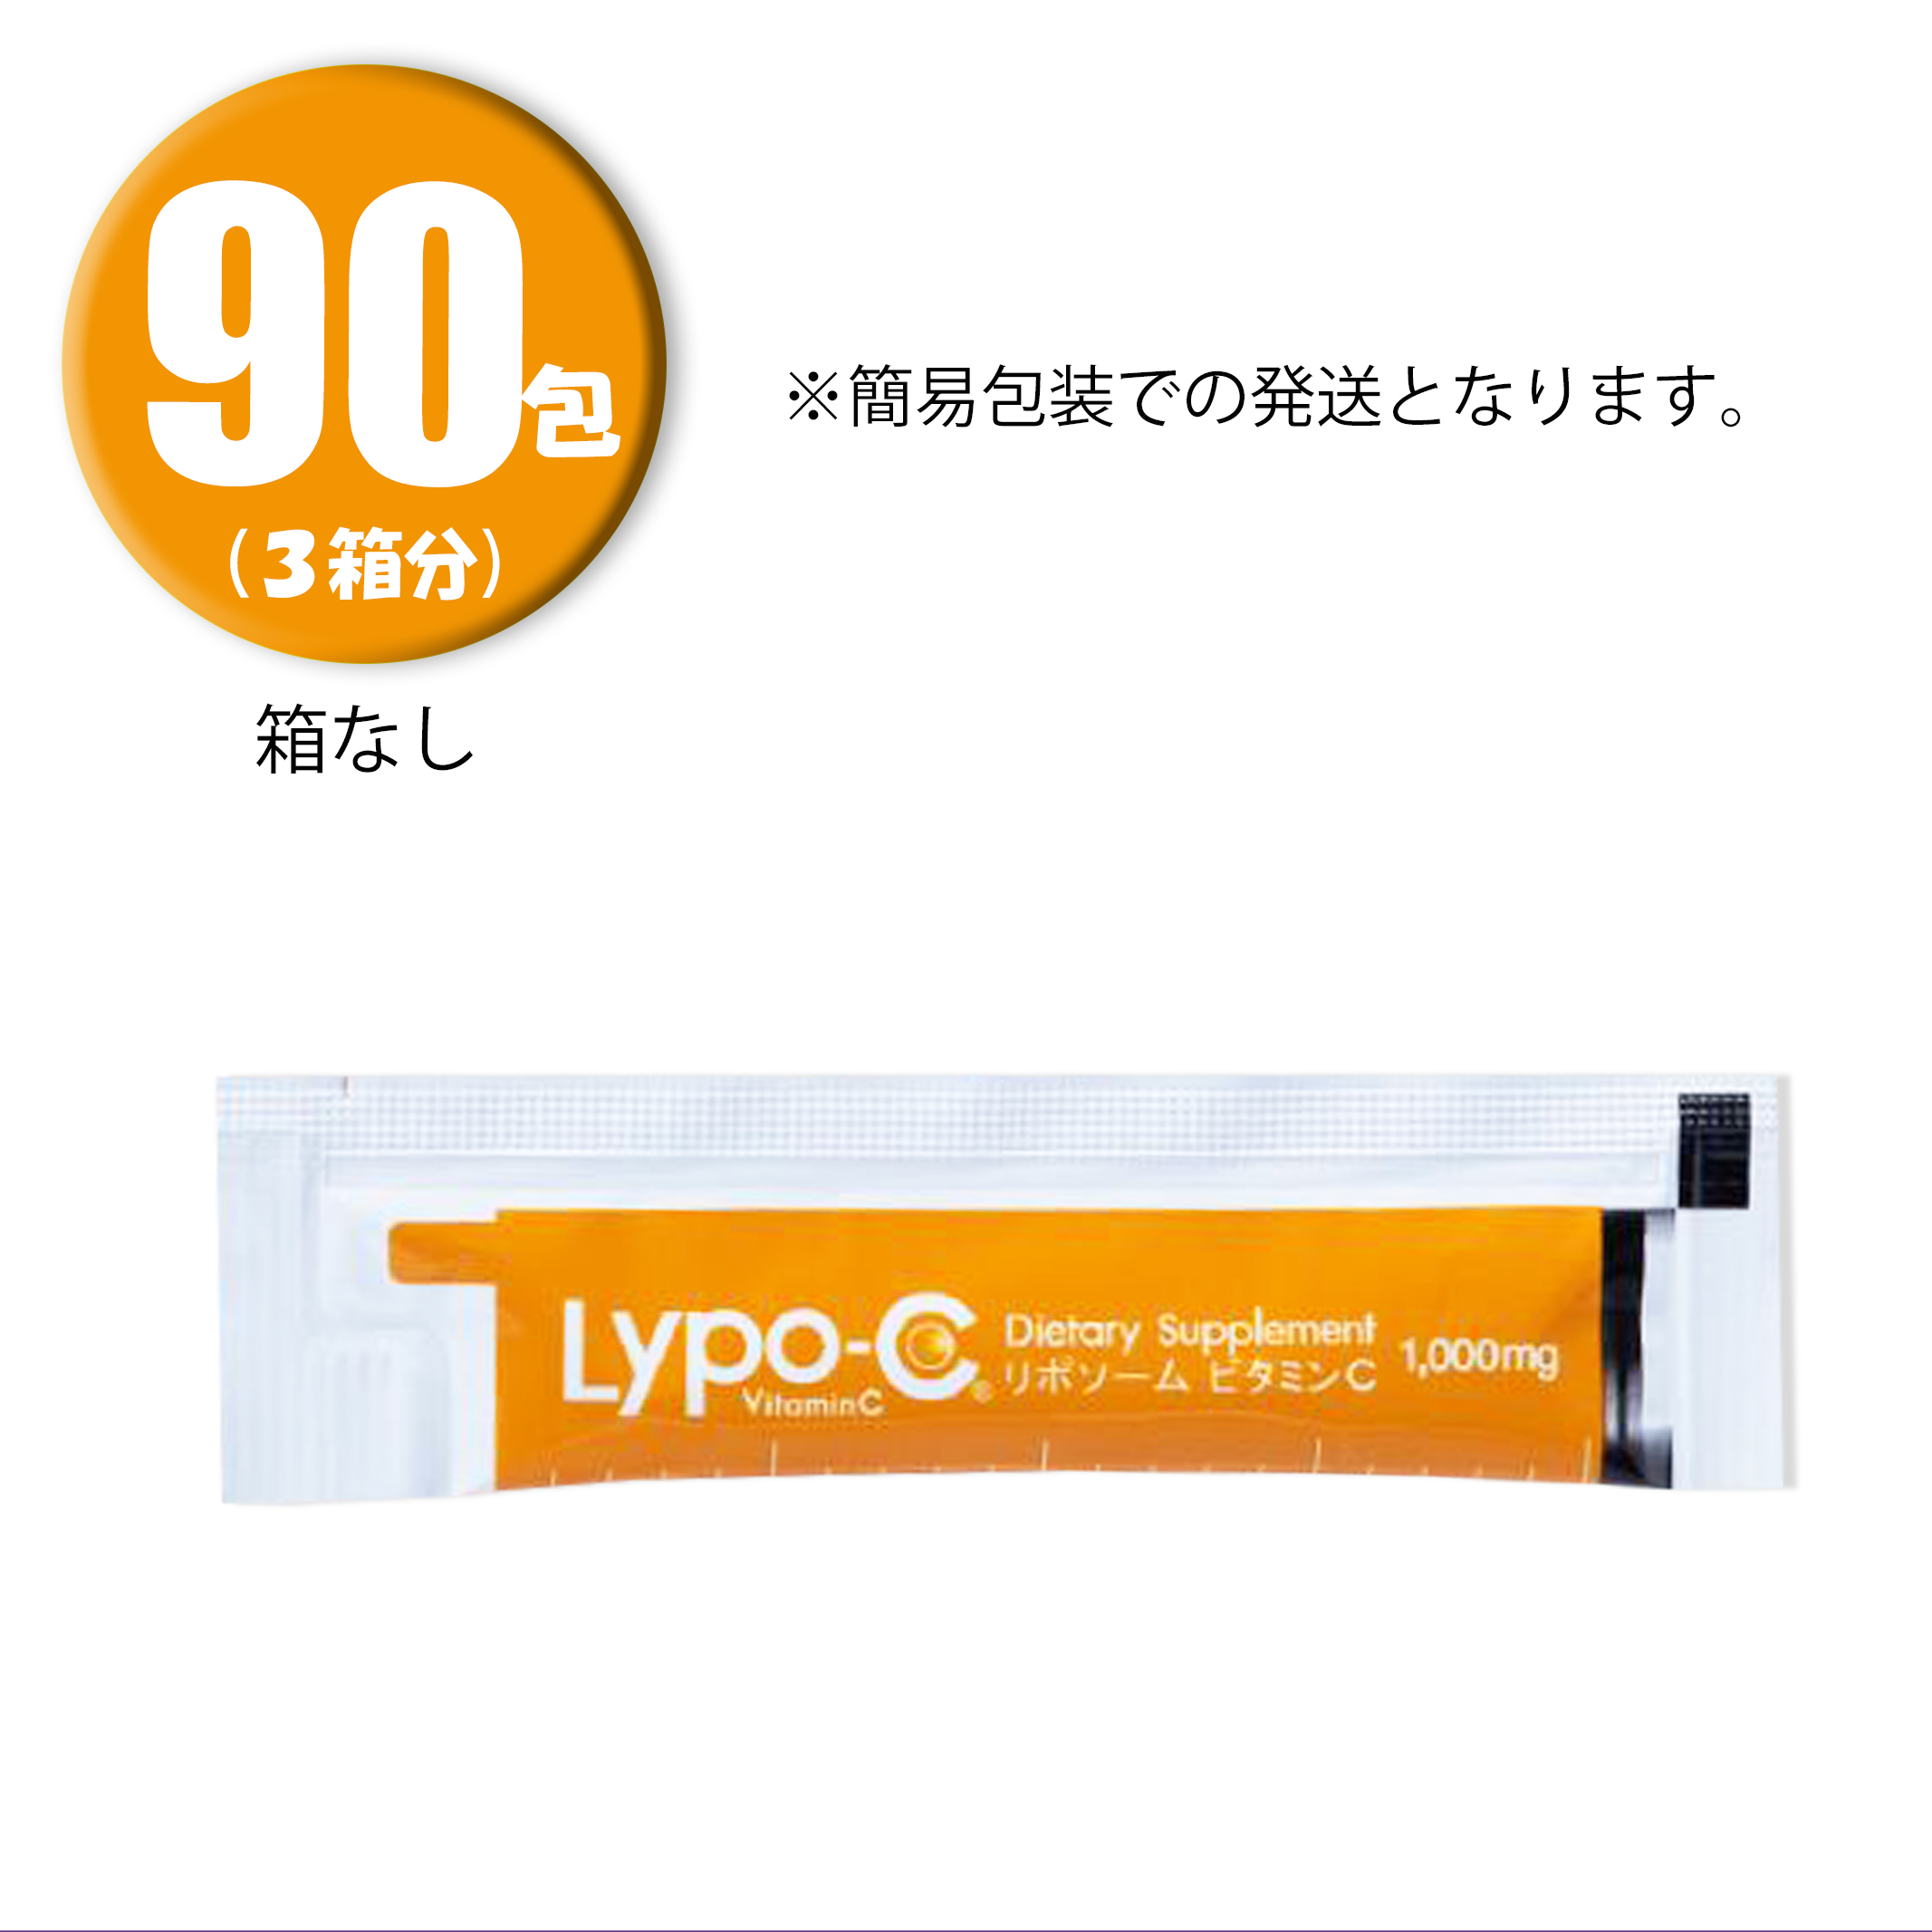 100%正規品 (3箱分) Lypo-C リポ 30包 常温配送 ×3箱 カプセルビタミン